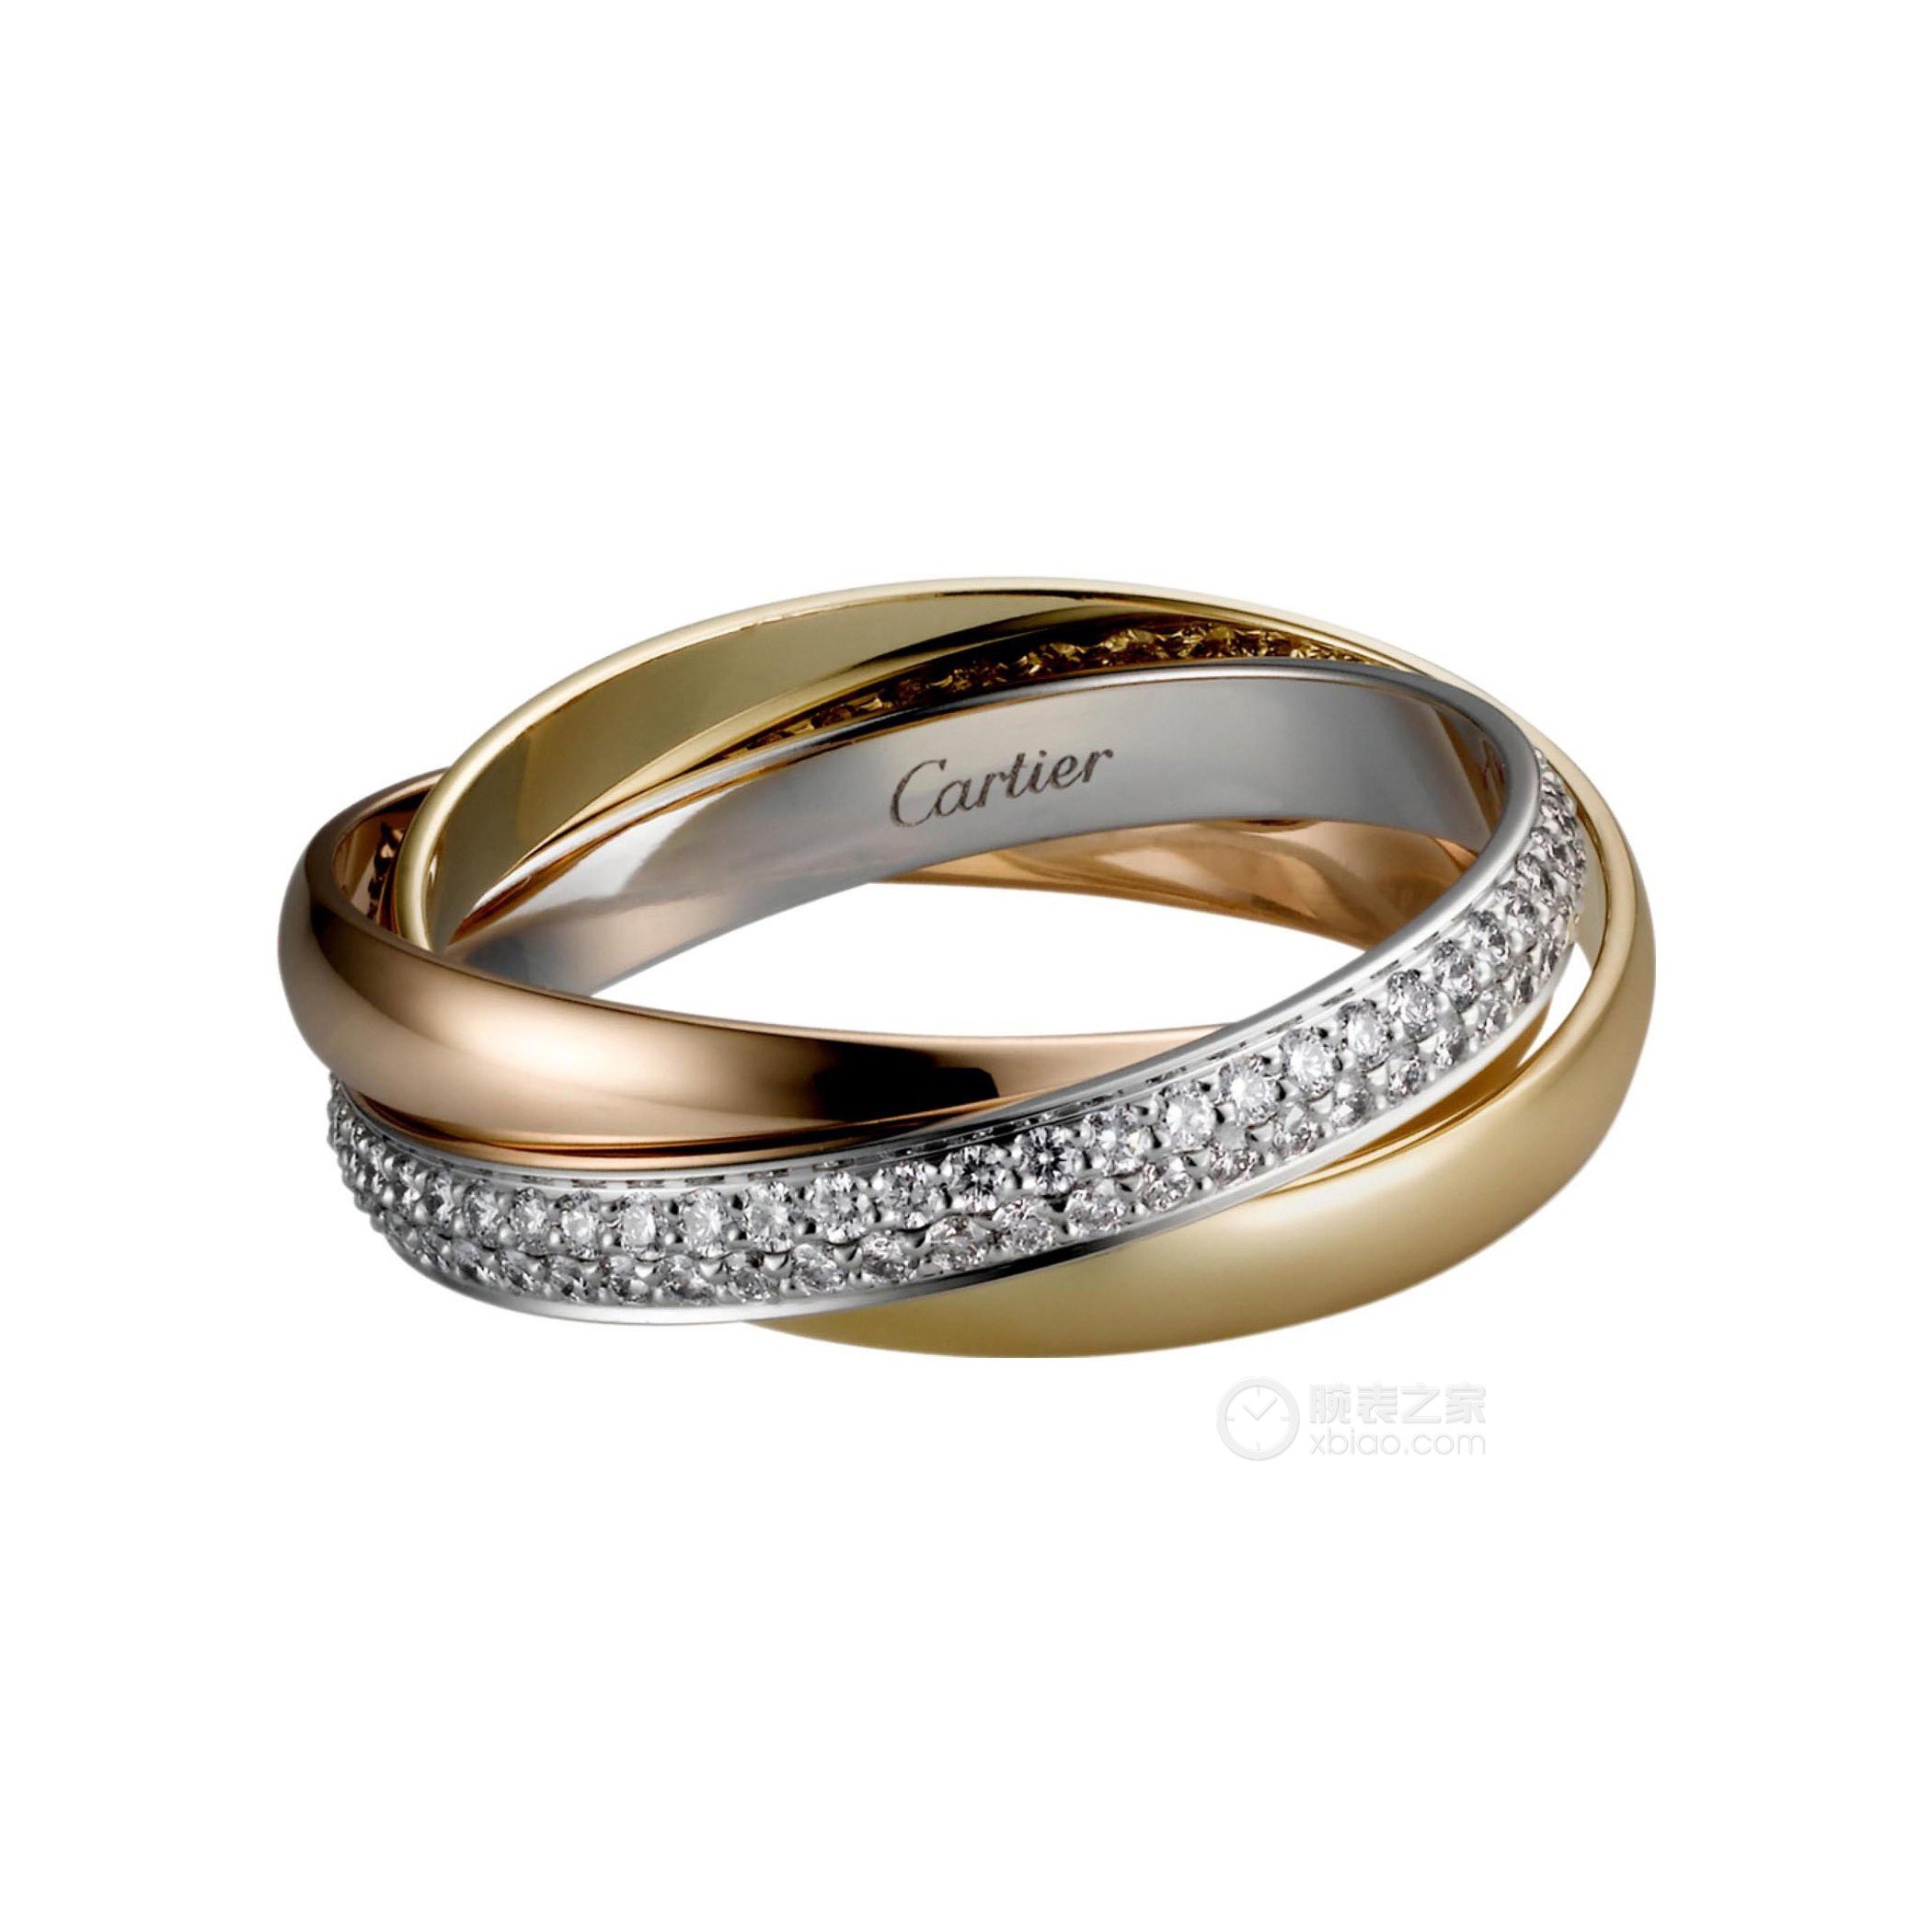 高清图|卡地亚钻石系列N4196900戒指图片2|腕表之家-珠宝